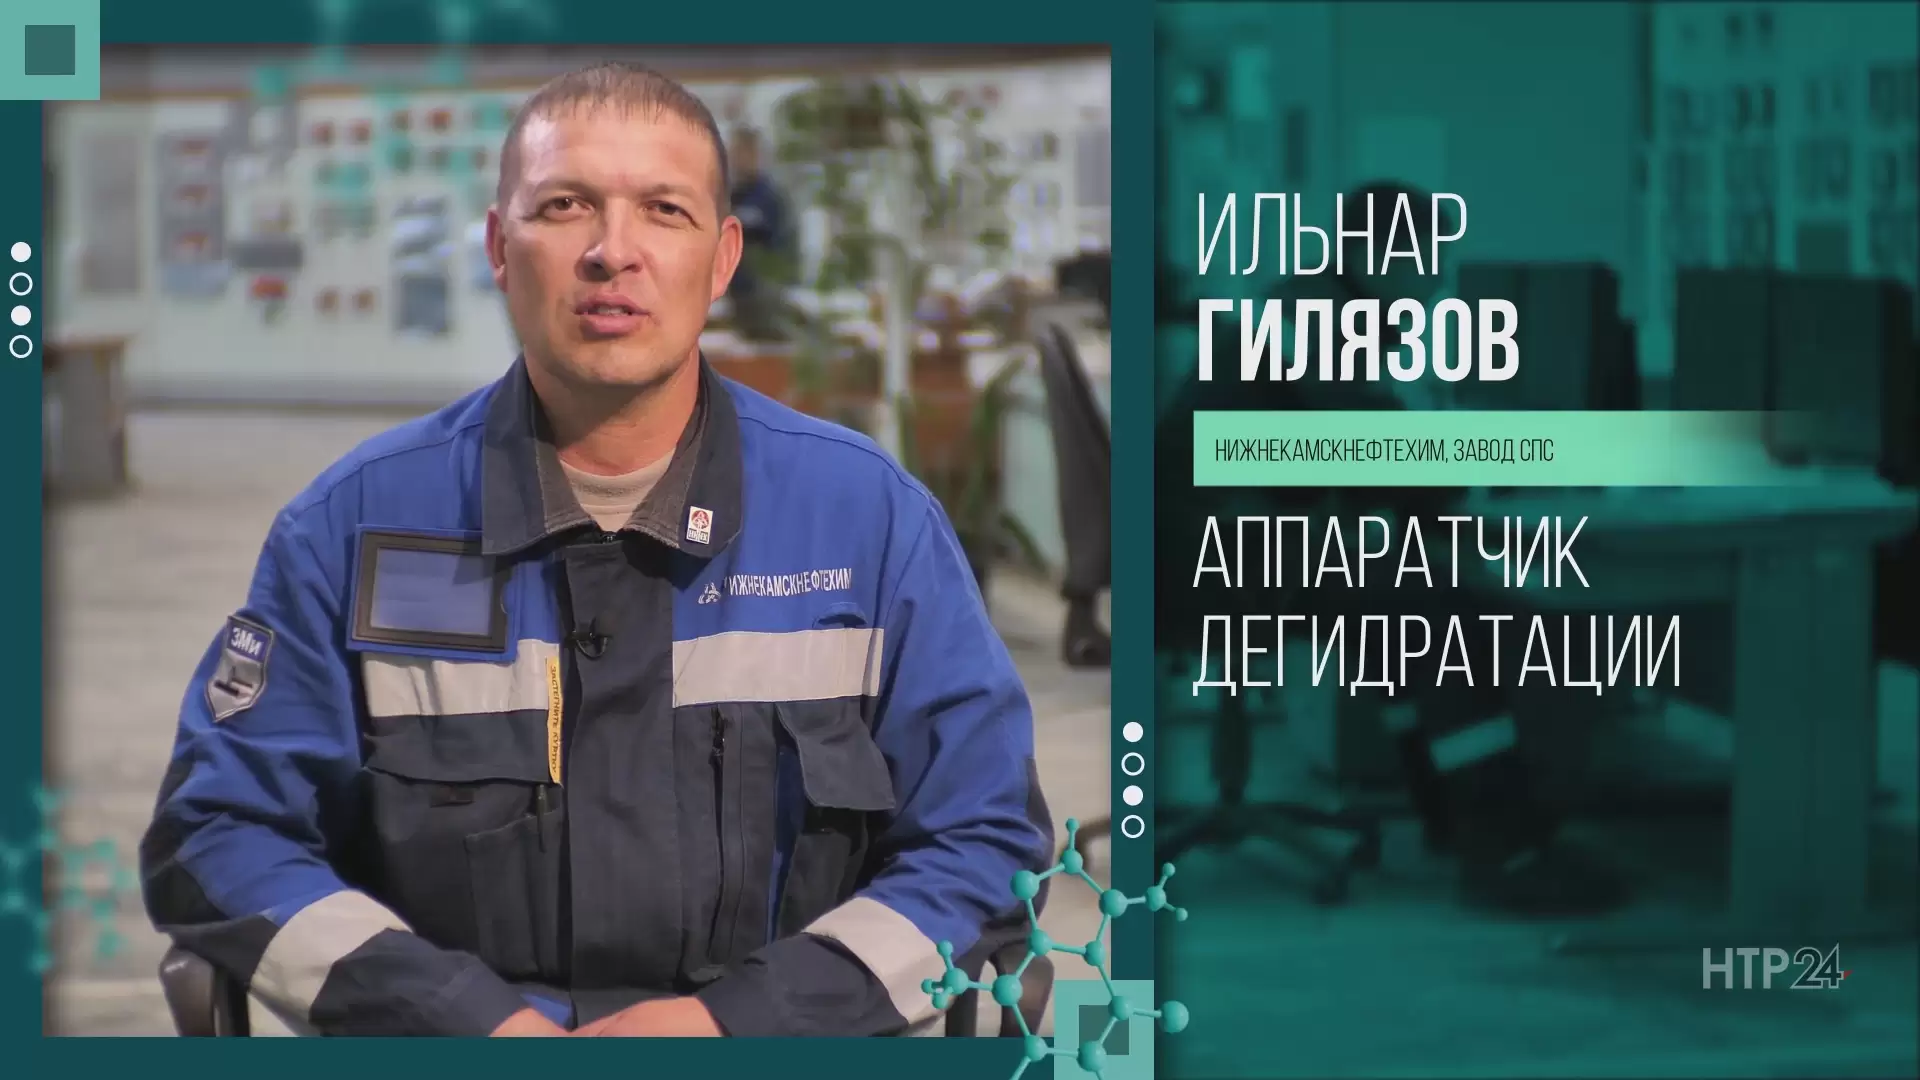 «Формула успеха»: интервью с аппаратчиком дегидратации завода СПС Ильнаром Гилязовым